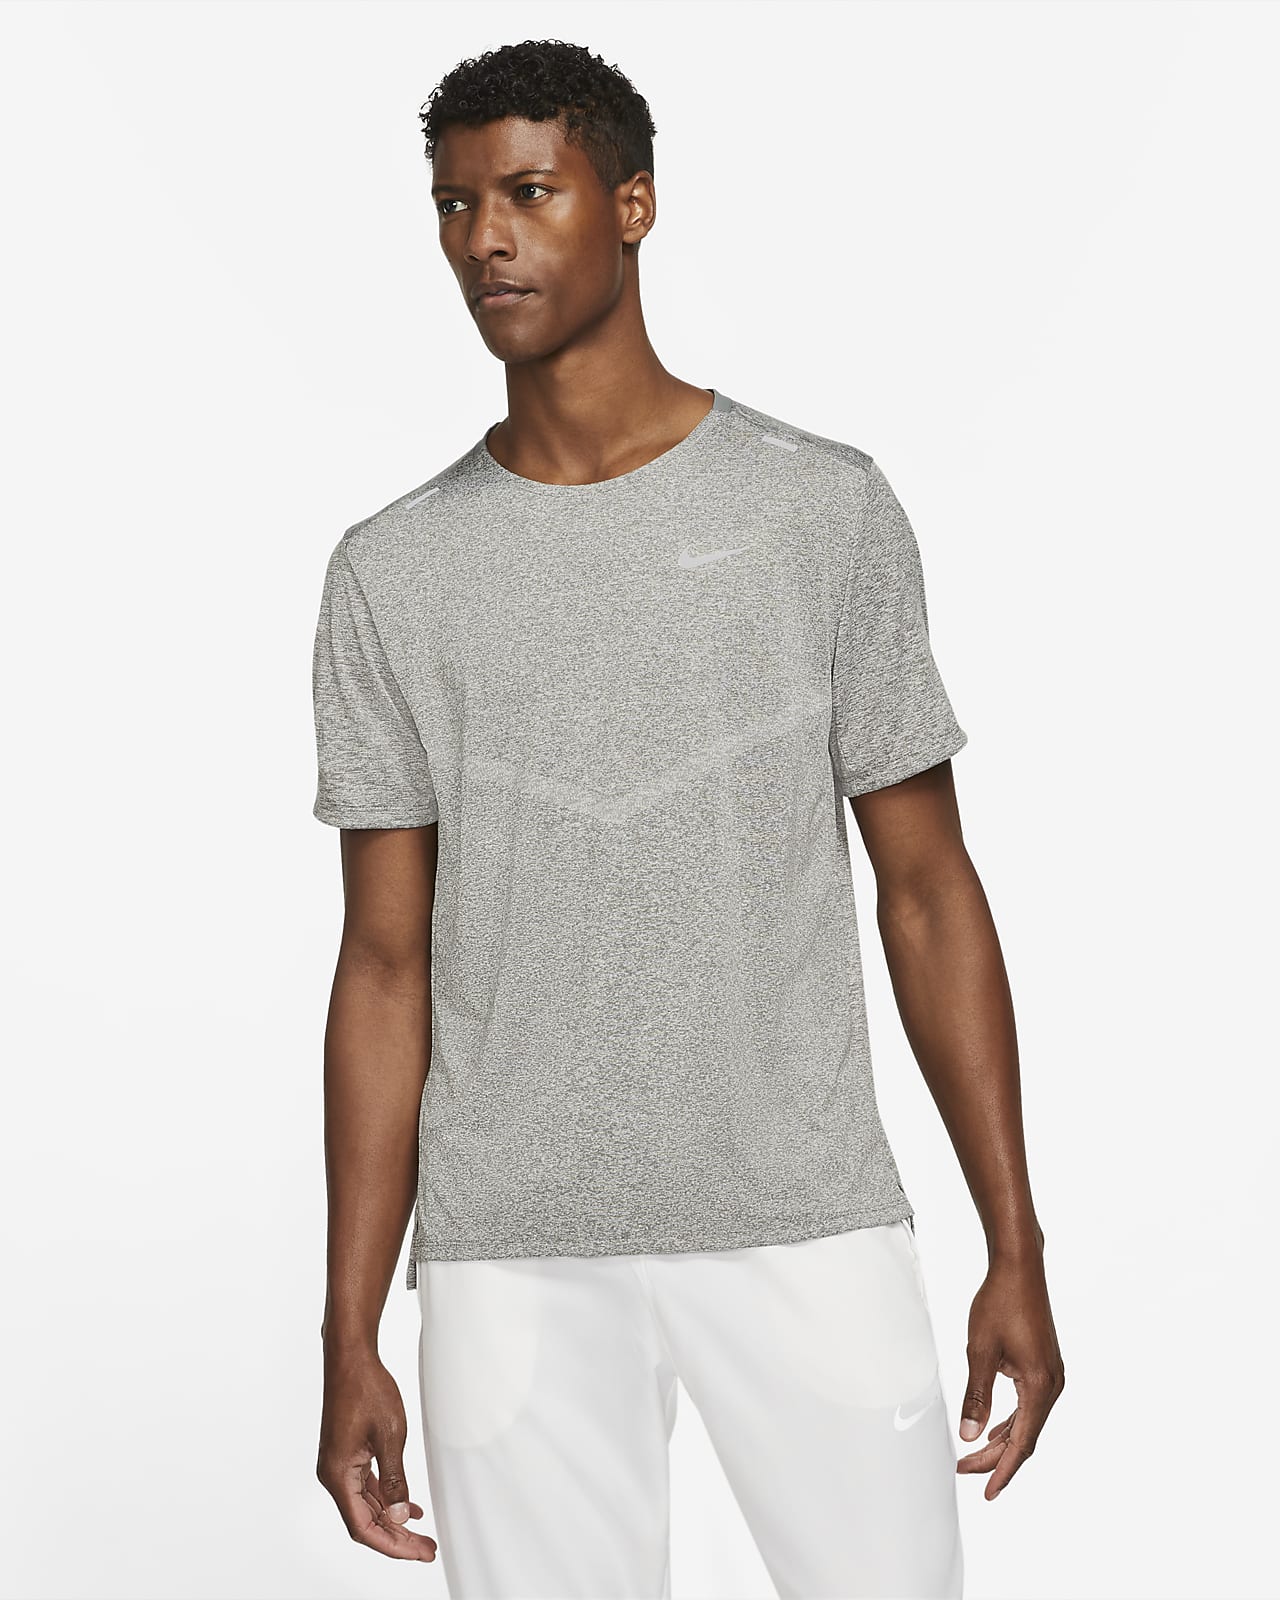 Pánské běžecké tričko Nike Rise 365 Dri-FIT s krátkým rukávem